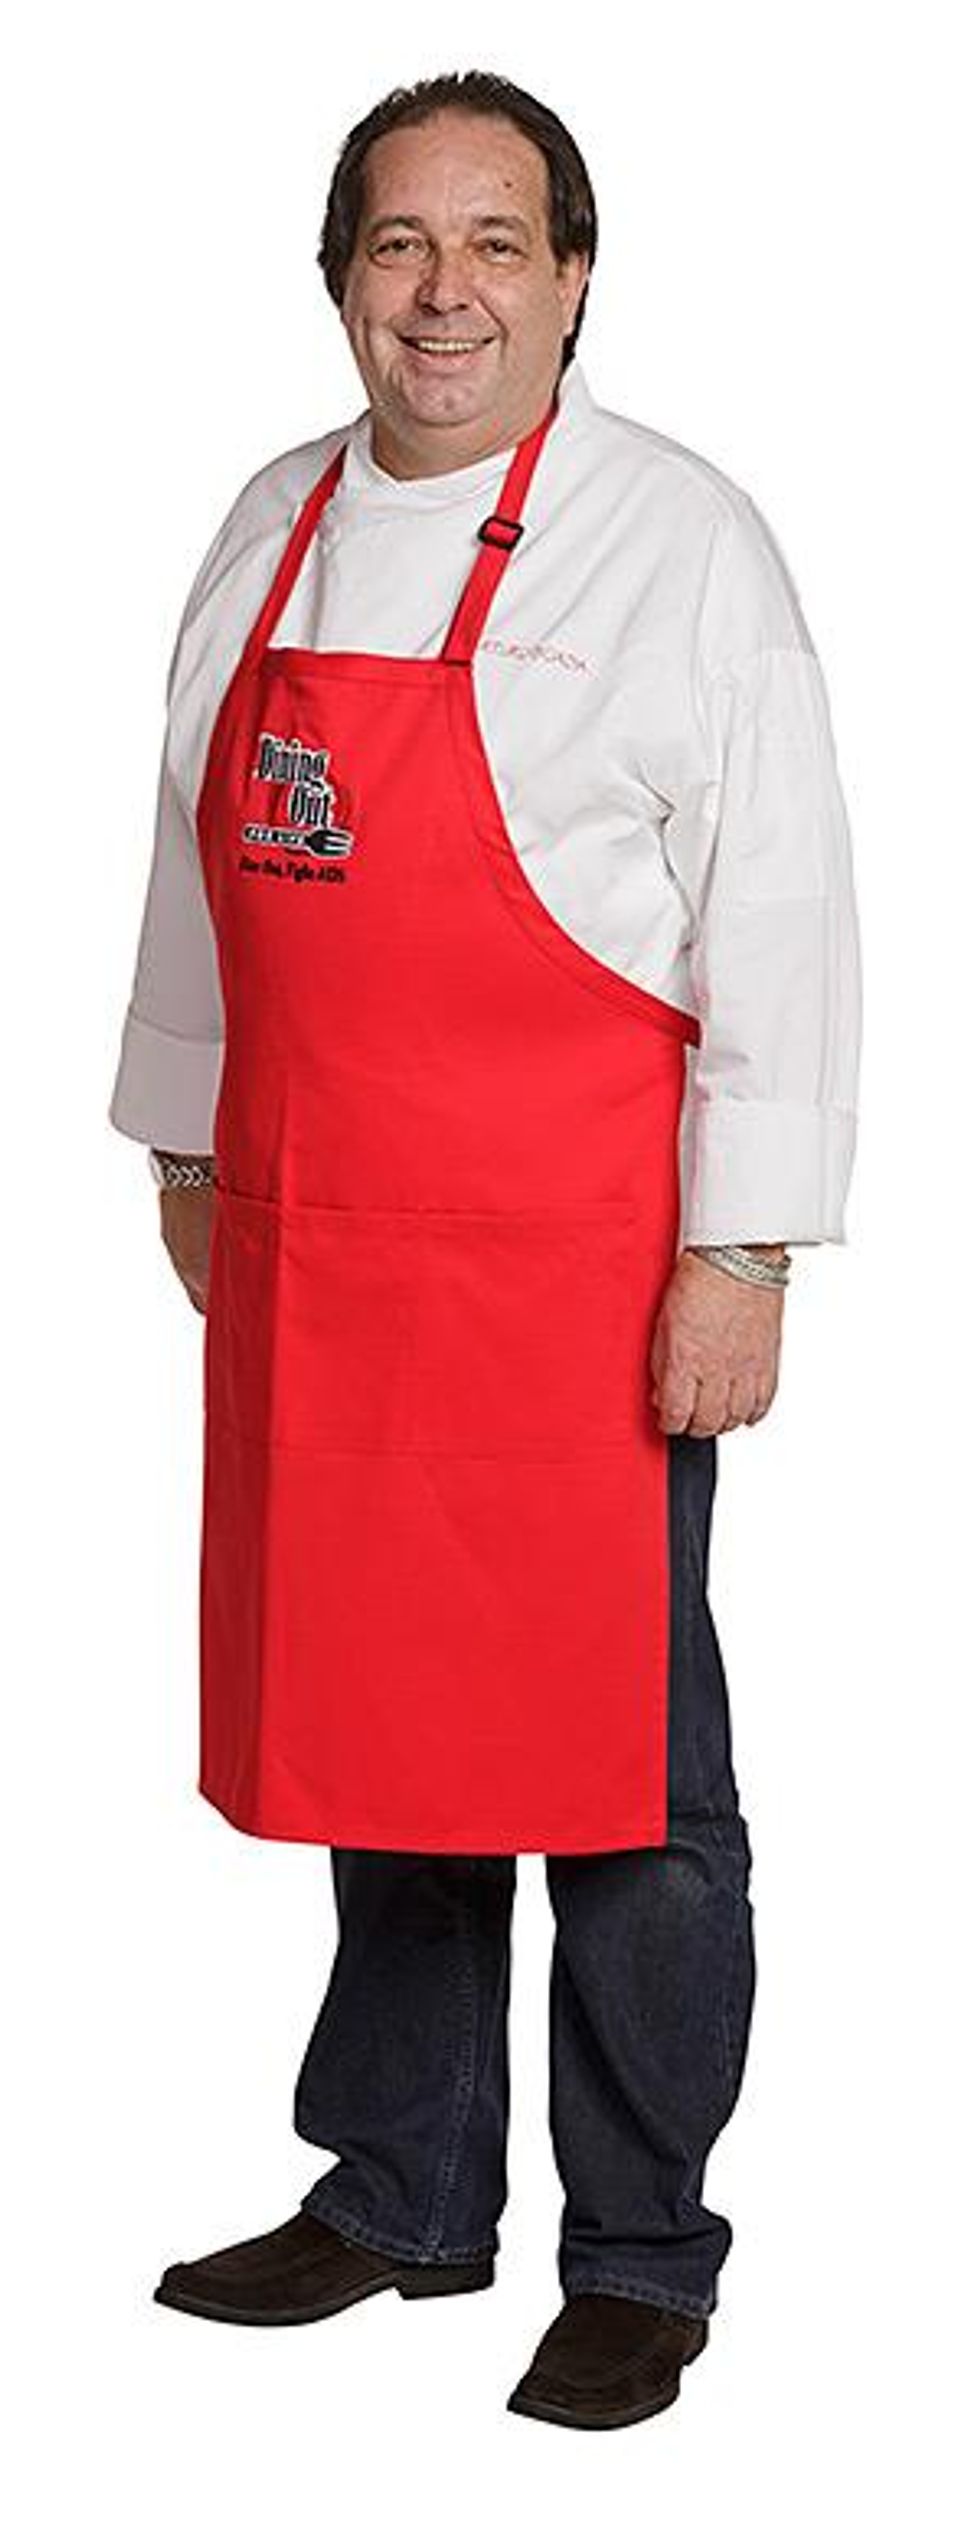 Arturo-boada-cuisine-chef-arturo-boadax300